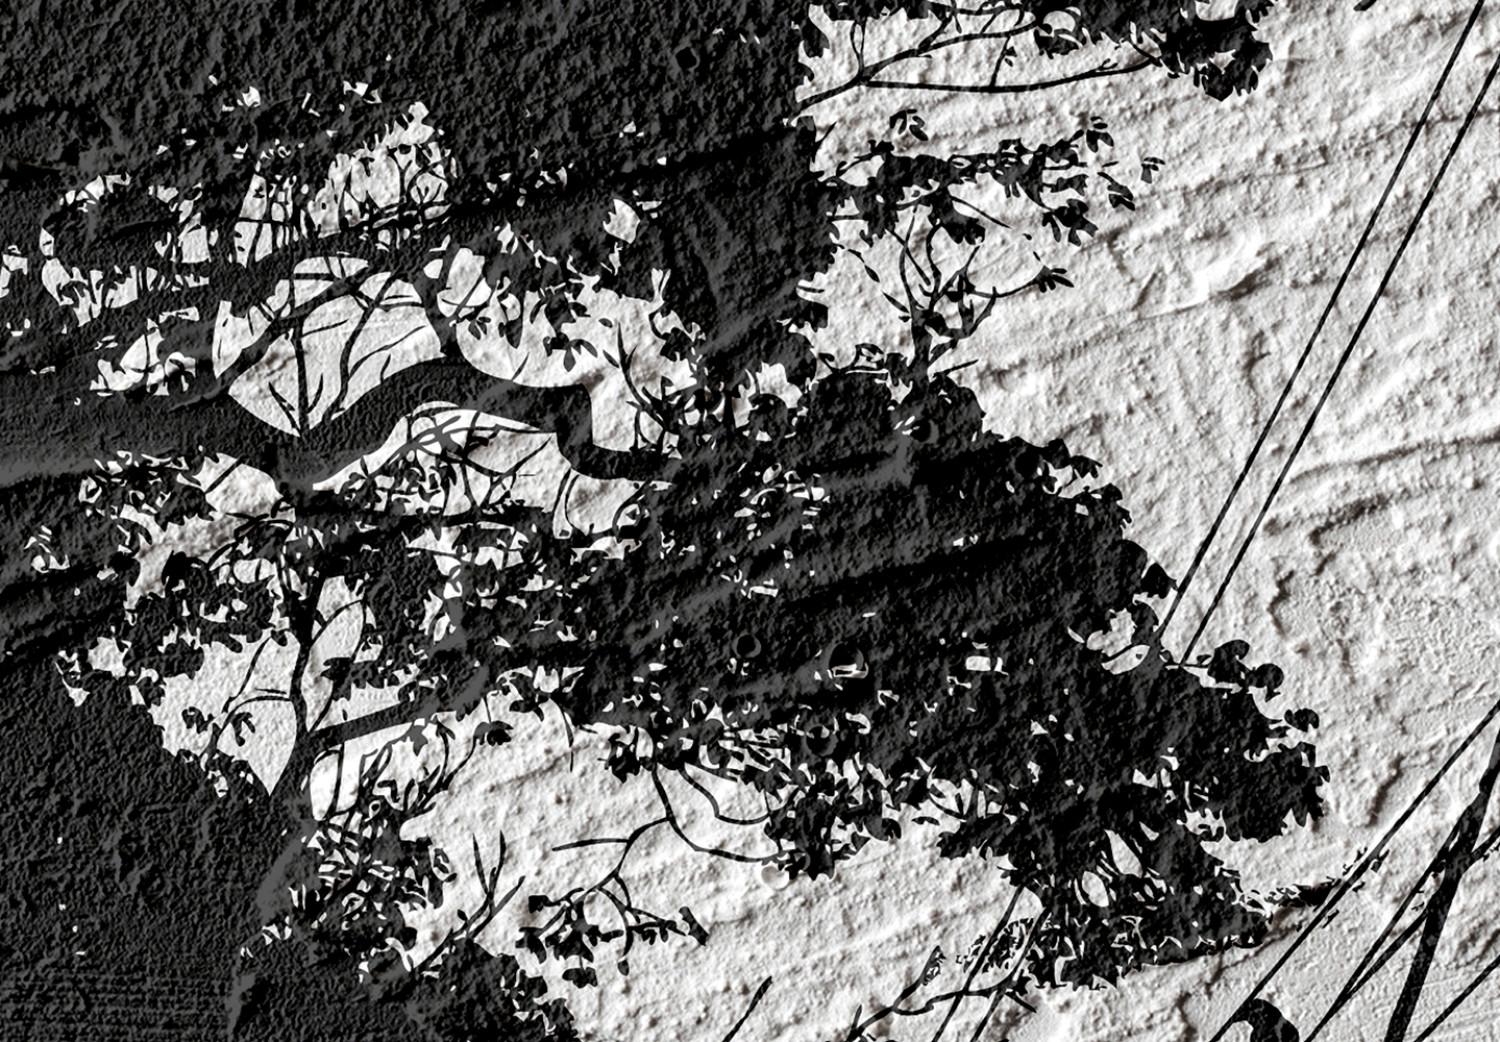 Cuadro decorativo Refugio aviar (1 pieza) - sombra de árbol en fondo blanco y negro